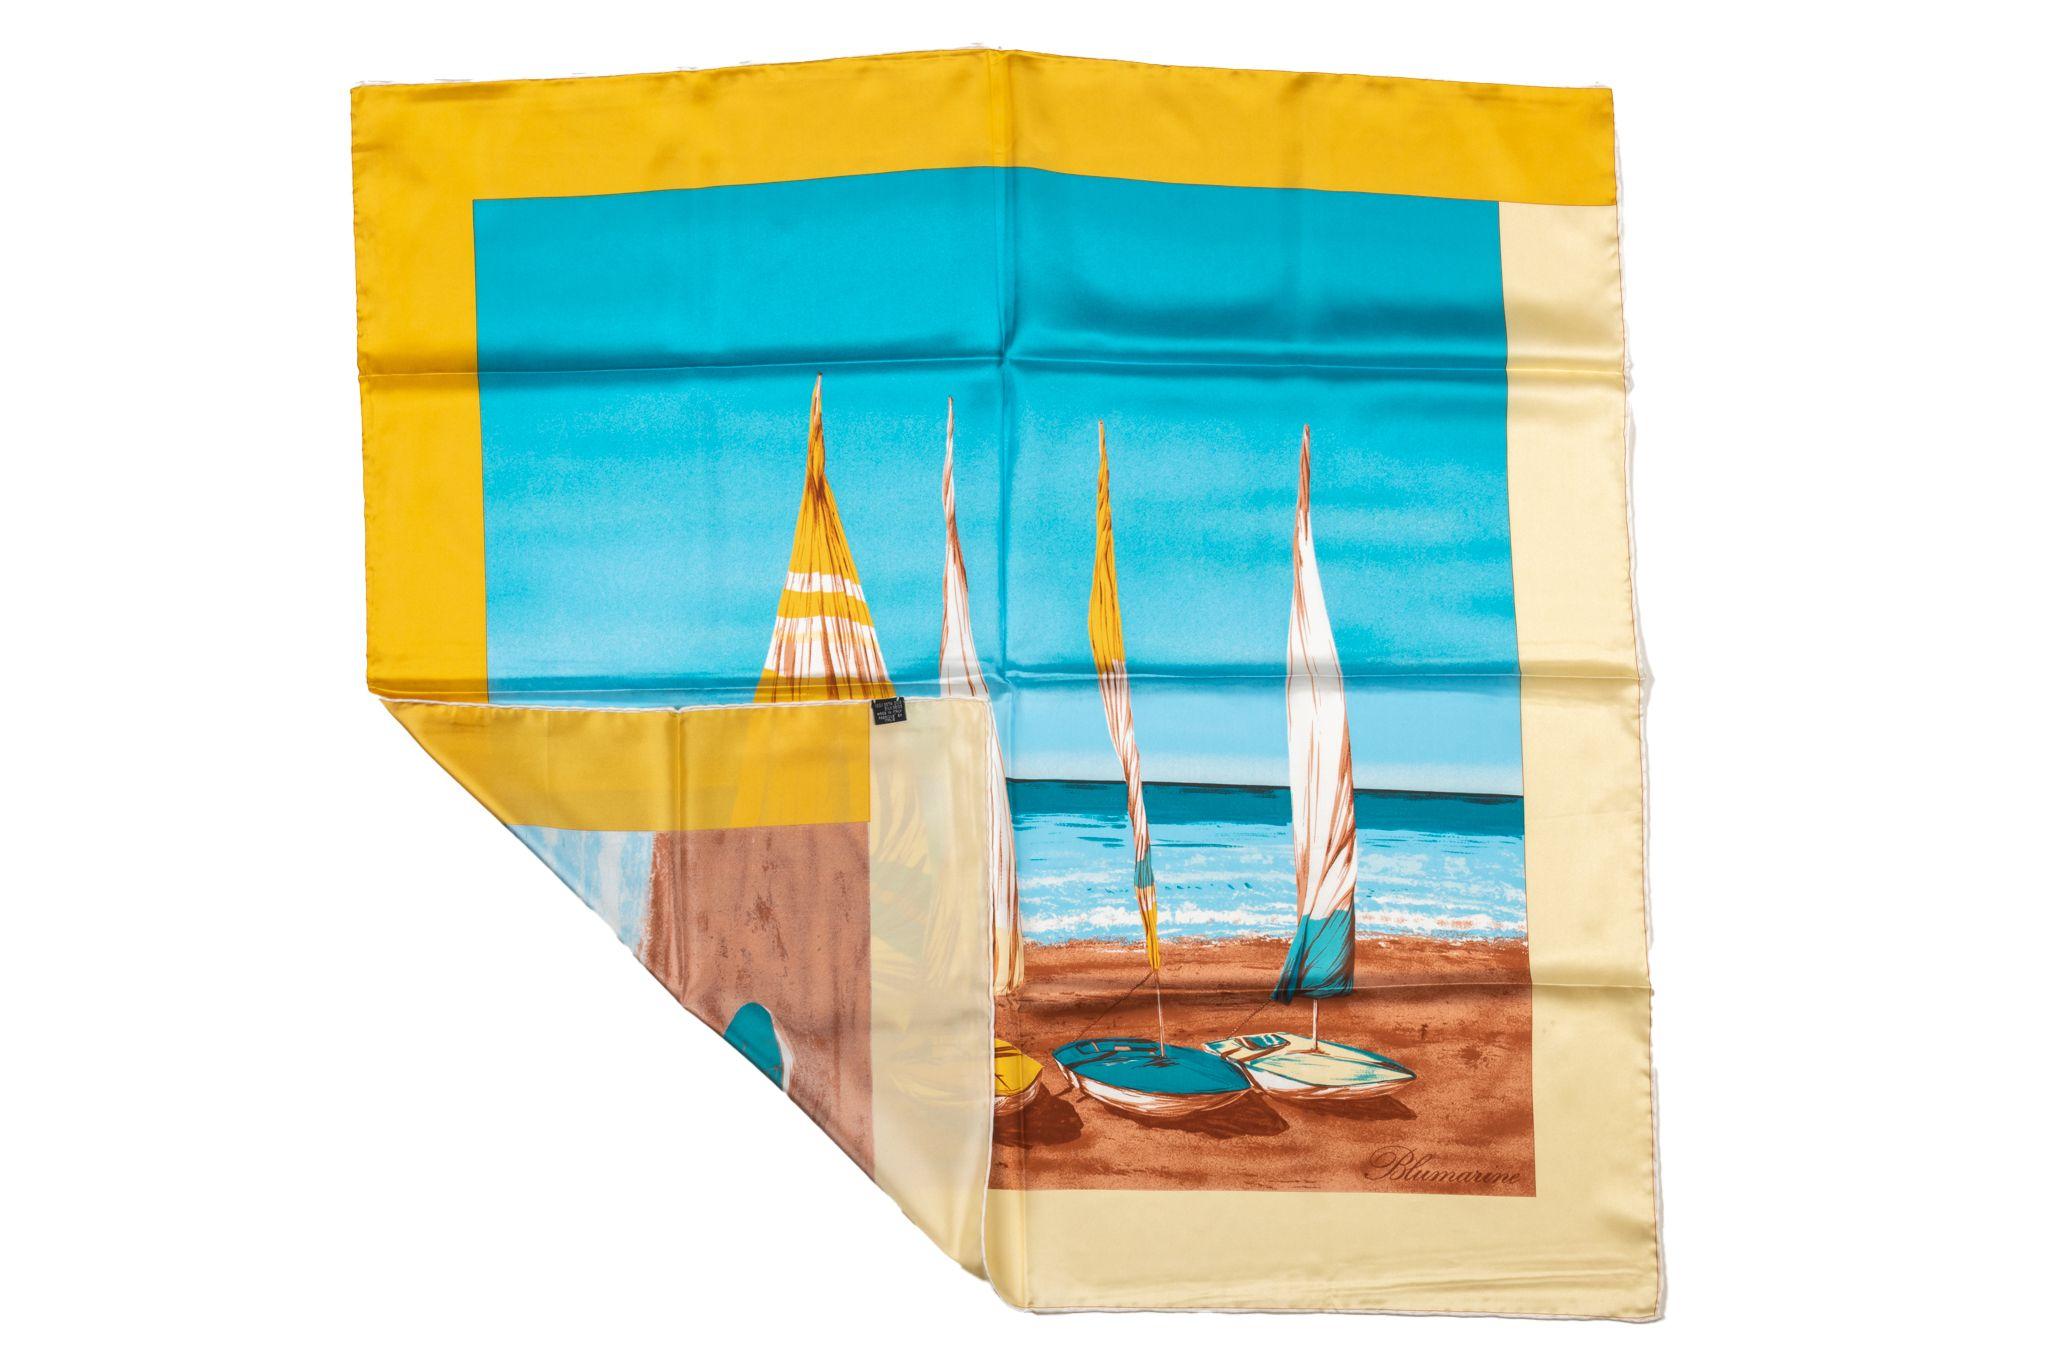 Foulard en soie Vintage Sailk de Blumarine. Le cadre est jaune et le motif du milieu représente différents bateaux à voile. L'article est en excellent état.